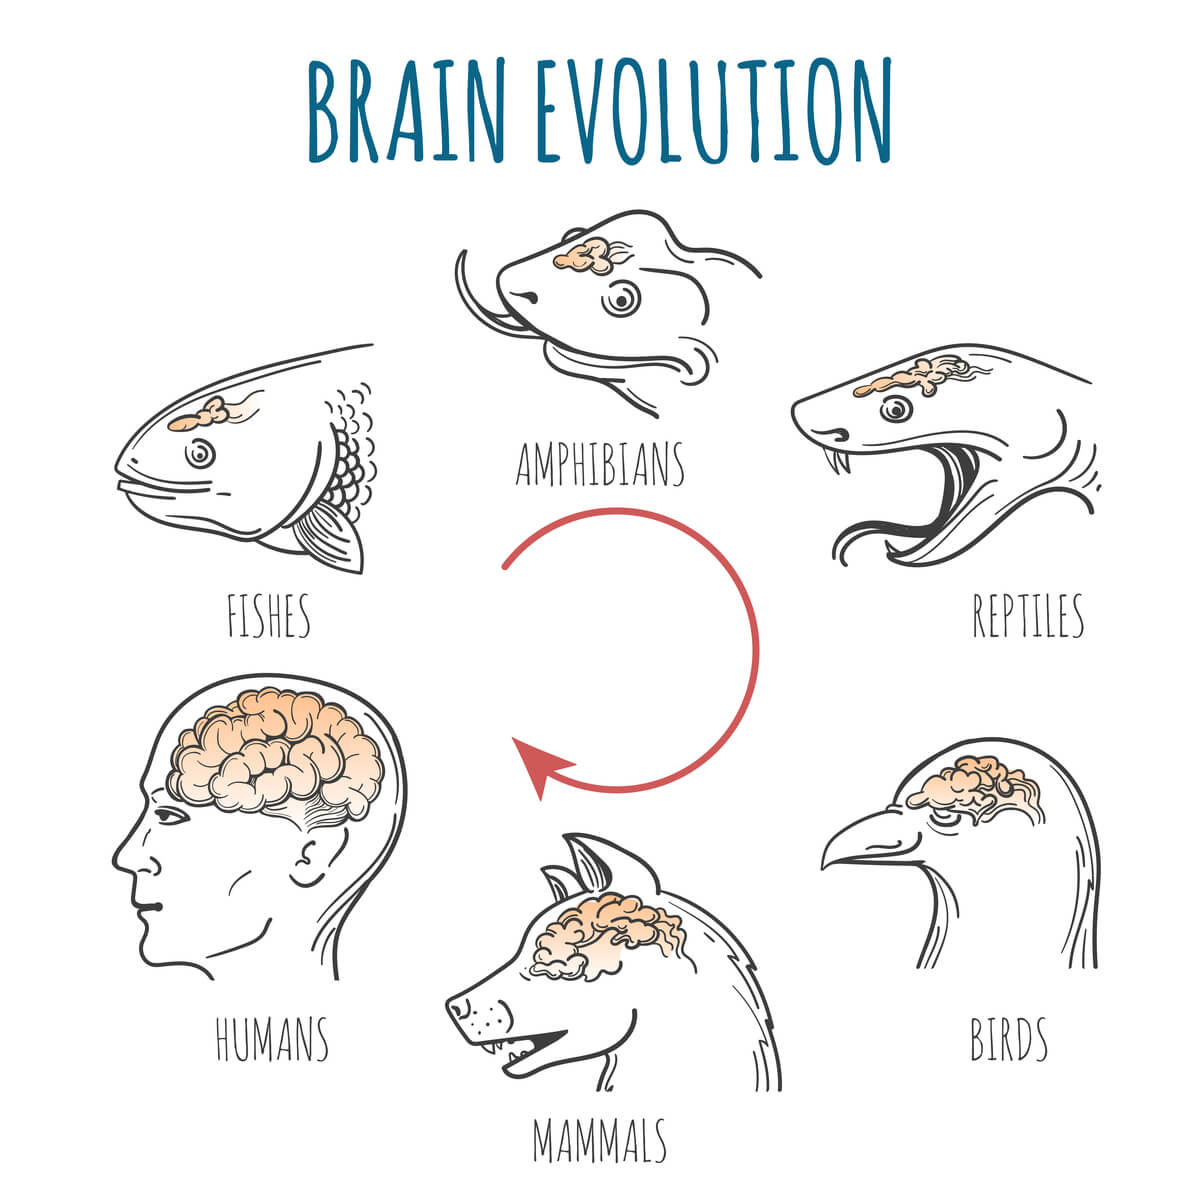 Modelos cerebrales de animales